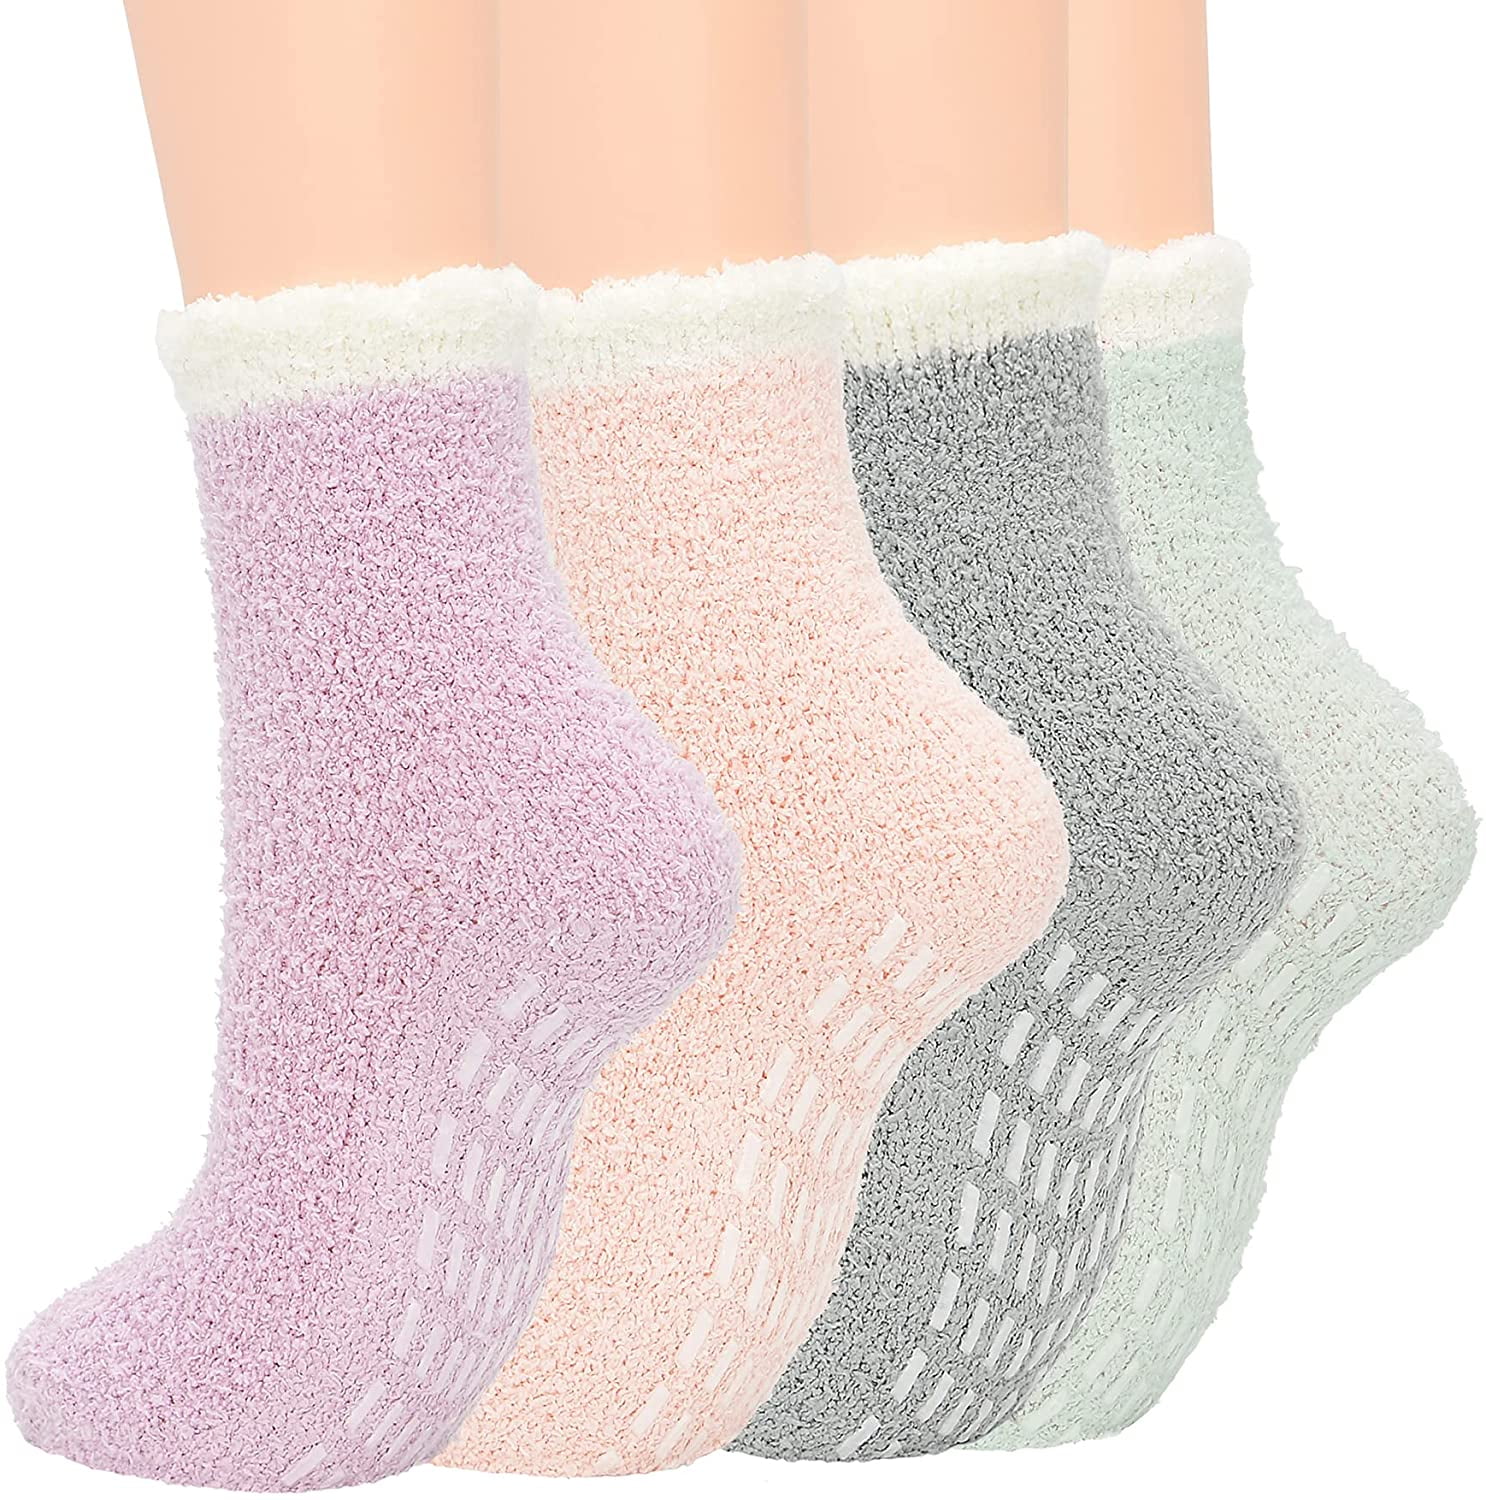 WOJOWSKI Womens Fleece Lining Warm Slippers Socks Fuzzy Cozy Non Skid Hospital Socks With Grippers